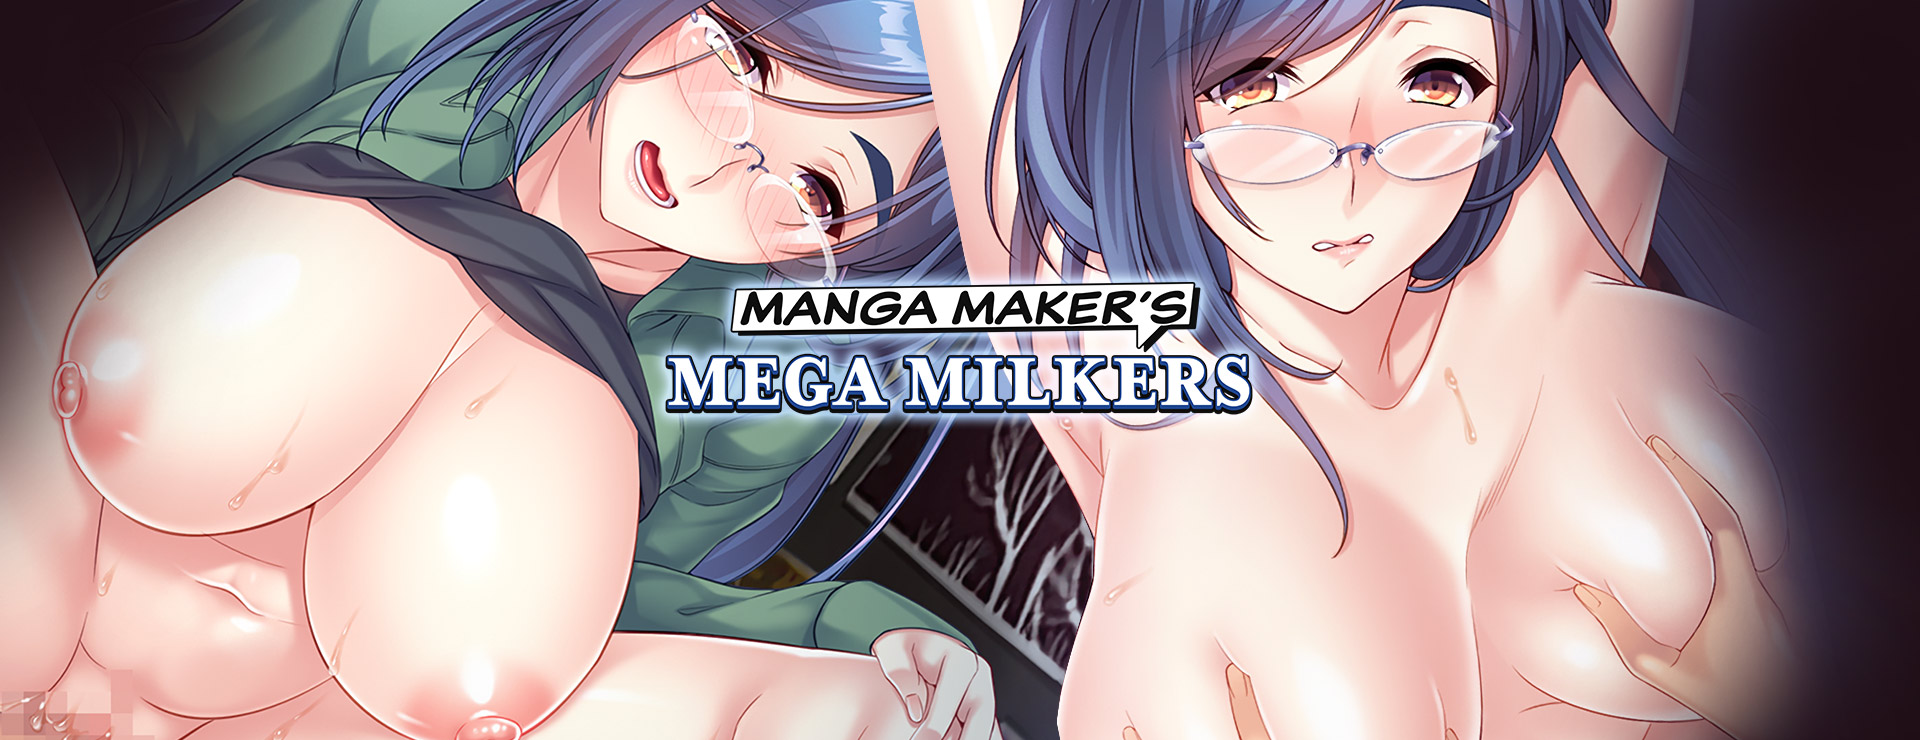 Manga Maker's Mega Milkers - 虚拟小说 遊戲